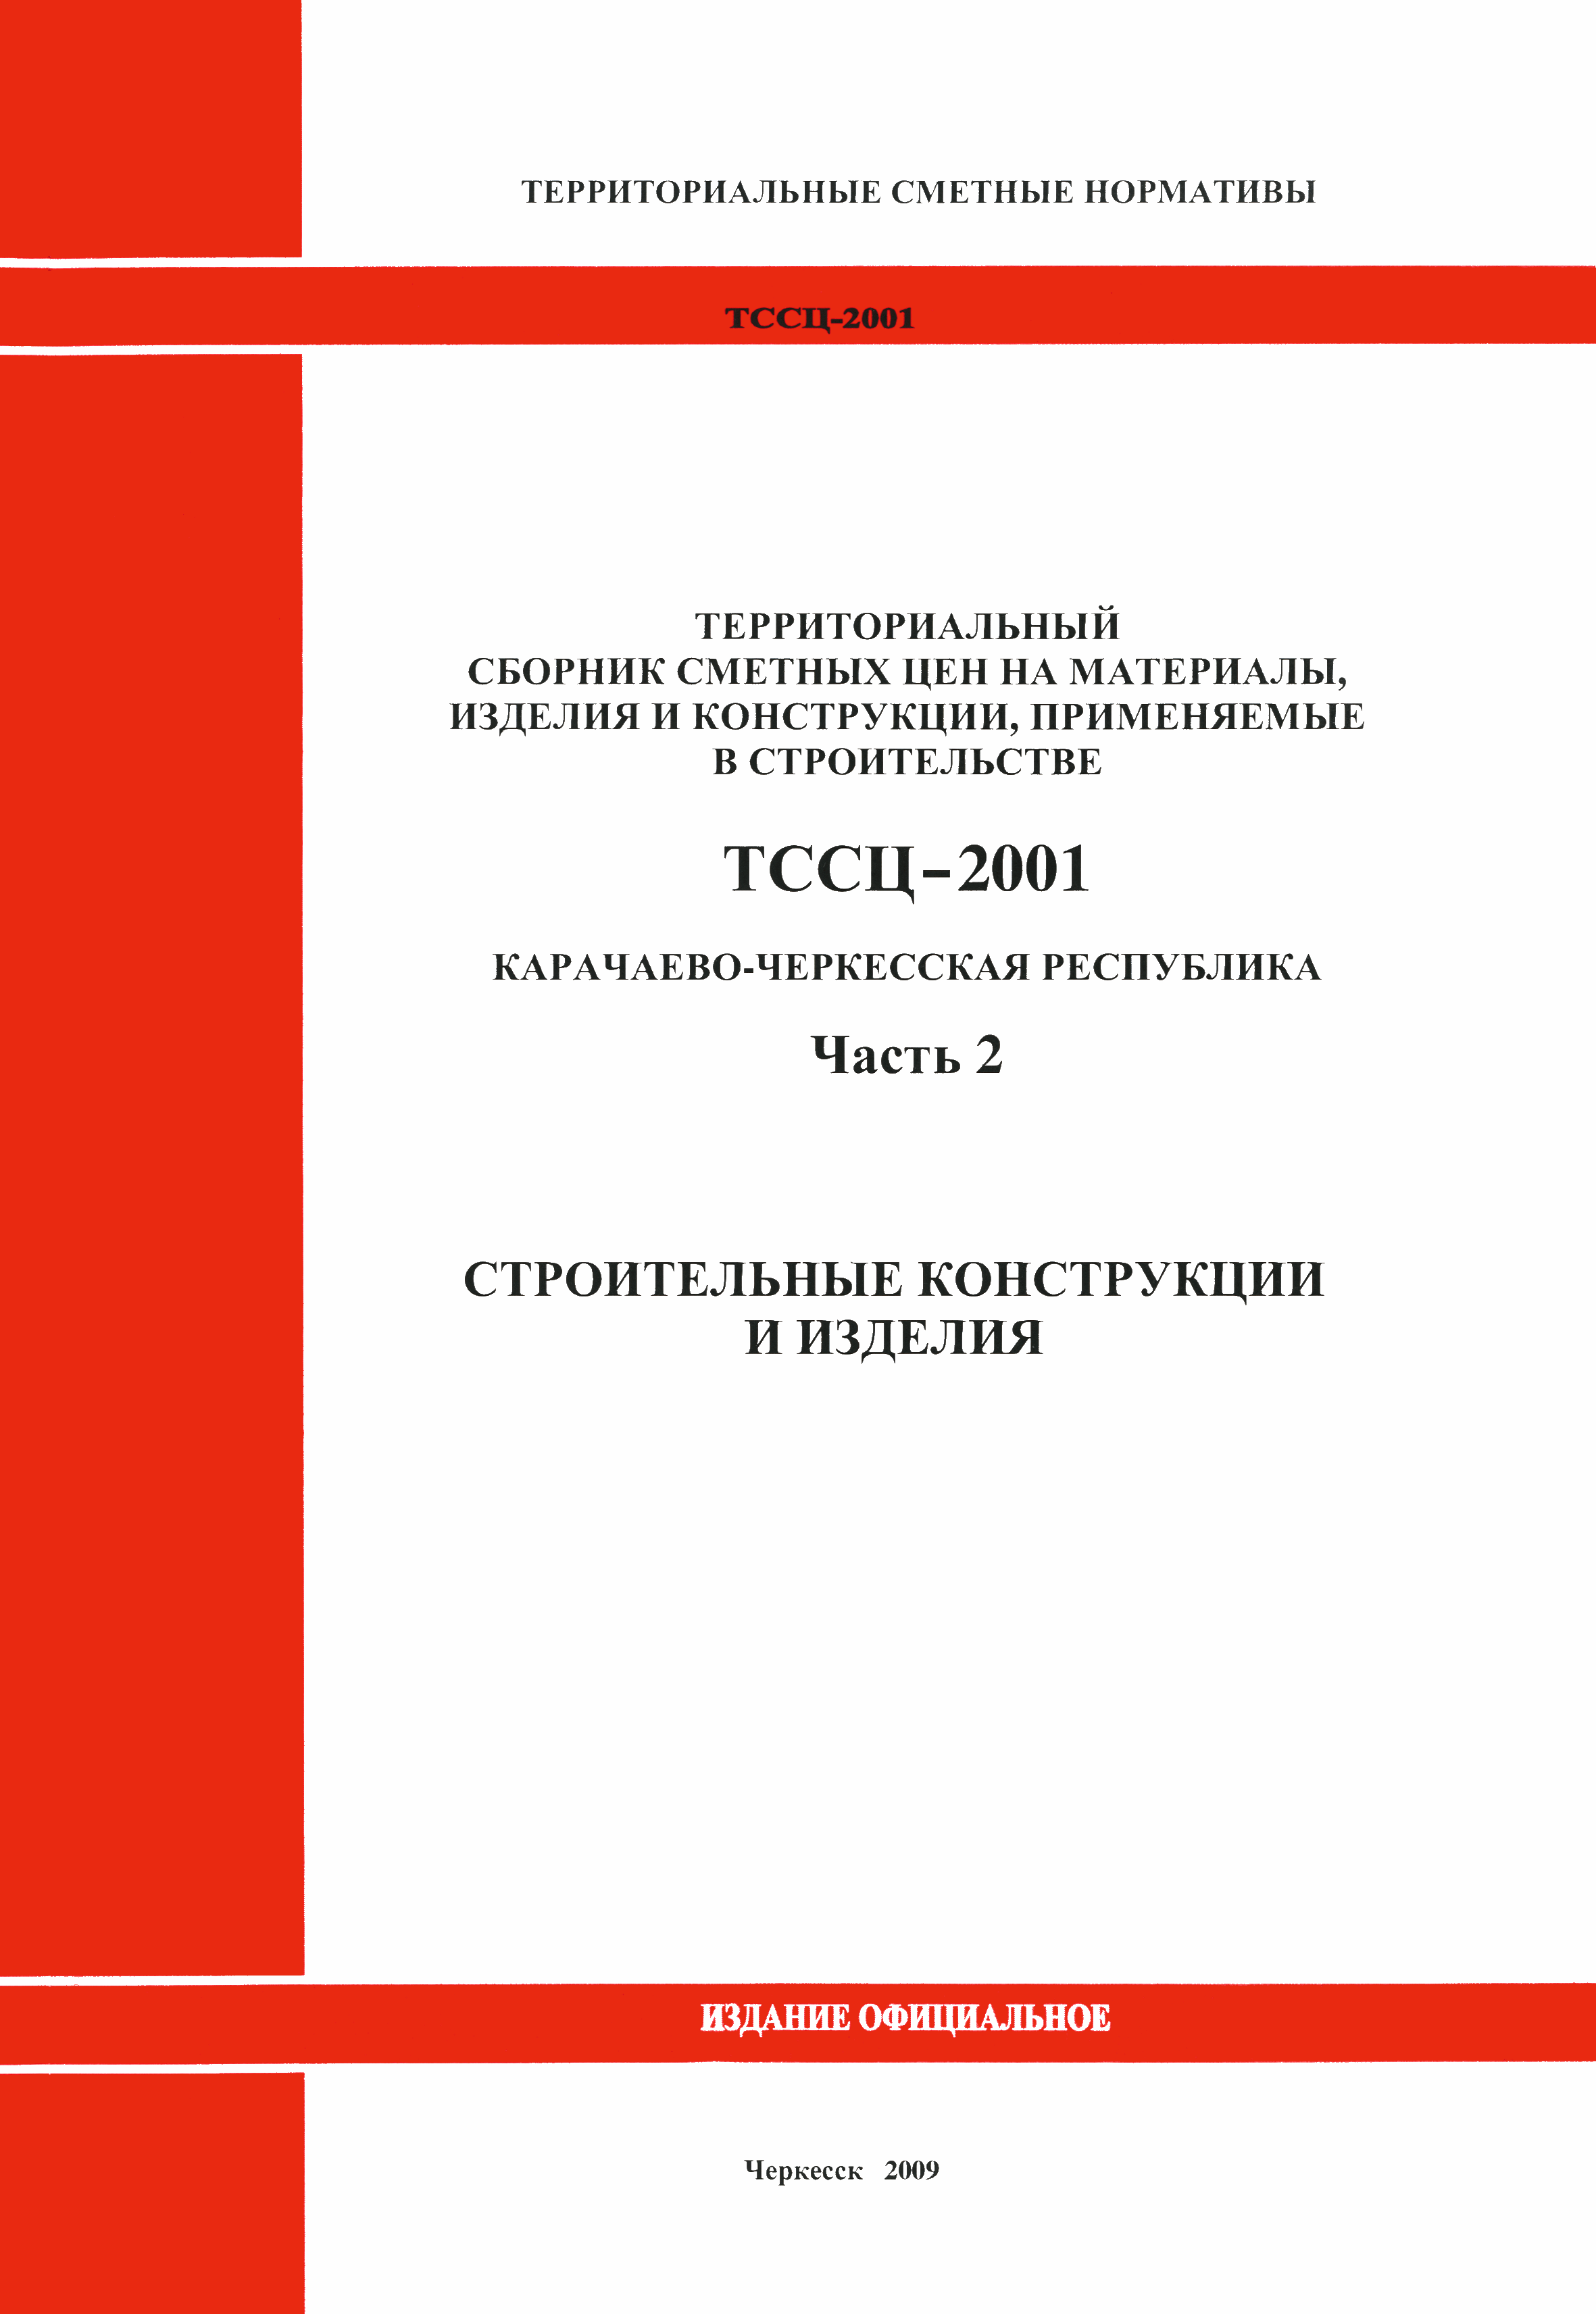 ТССЦ Карачаево-Черкесская Республика 02-2001